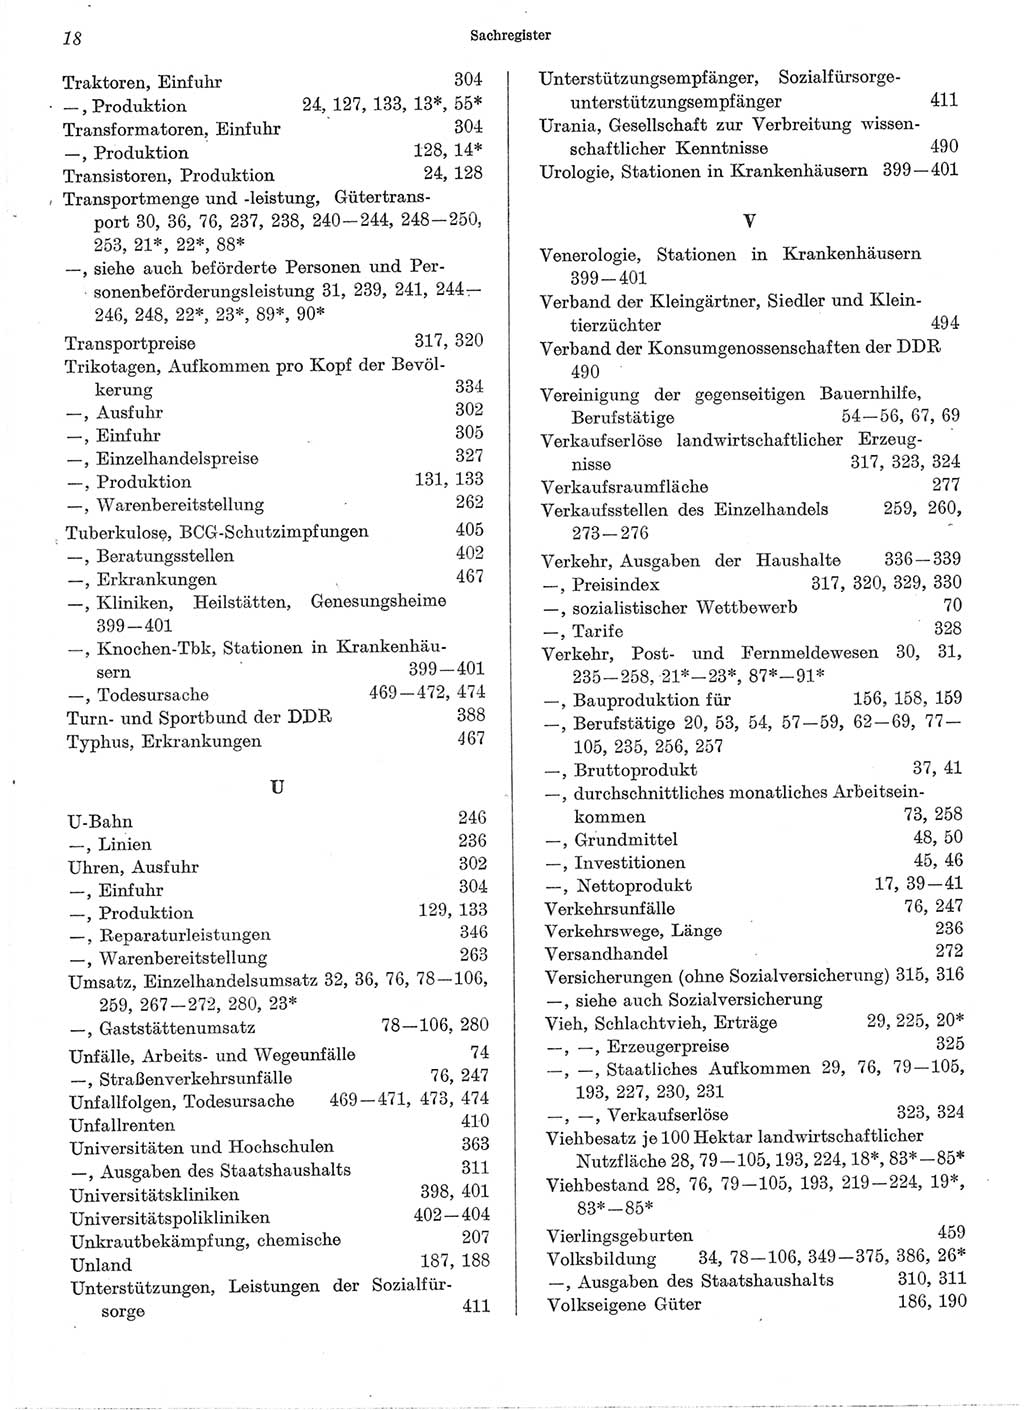 Statistisches Jahrbuch der Deutschen Demokratischen Republik (DDR) 1974, Seite 18 (Stat. Jb. DDR 1974, S. 18)